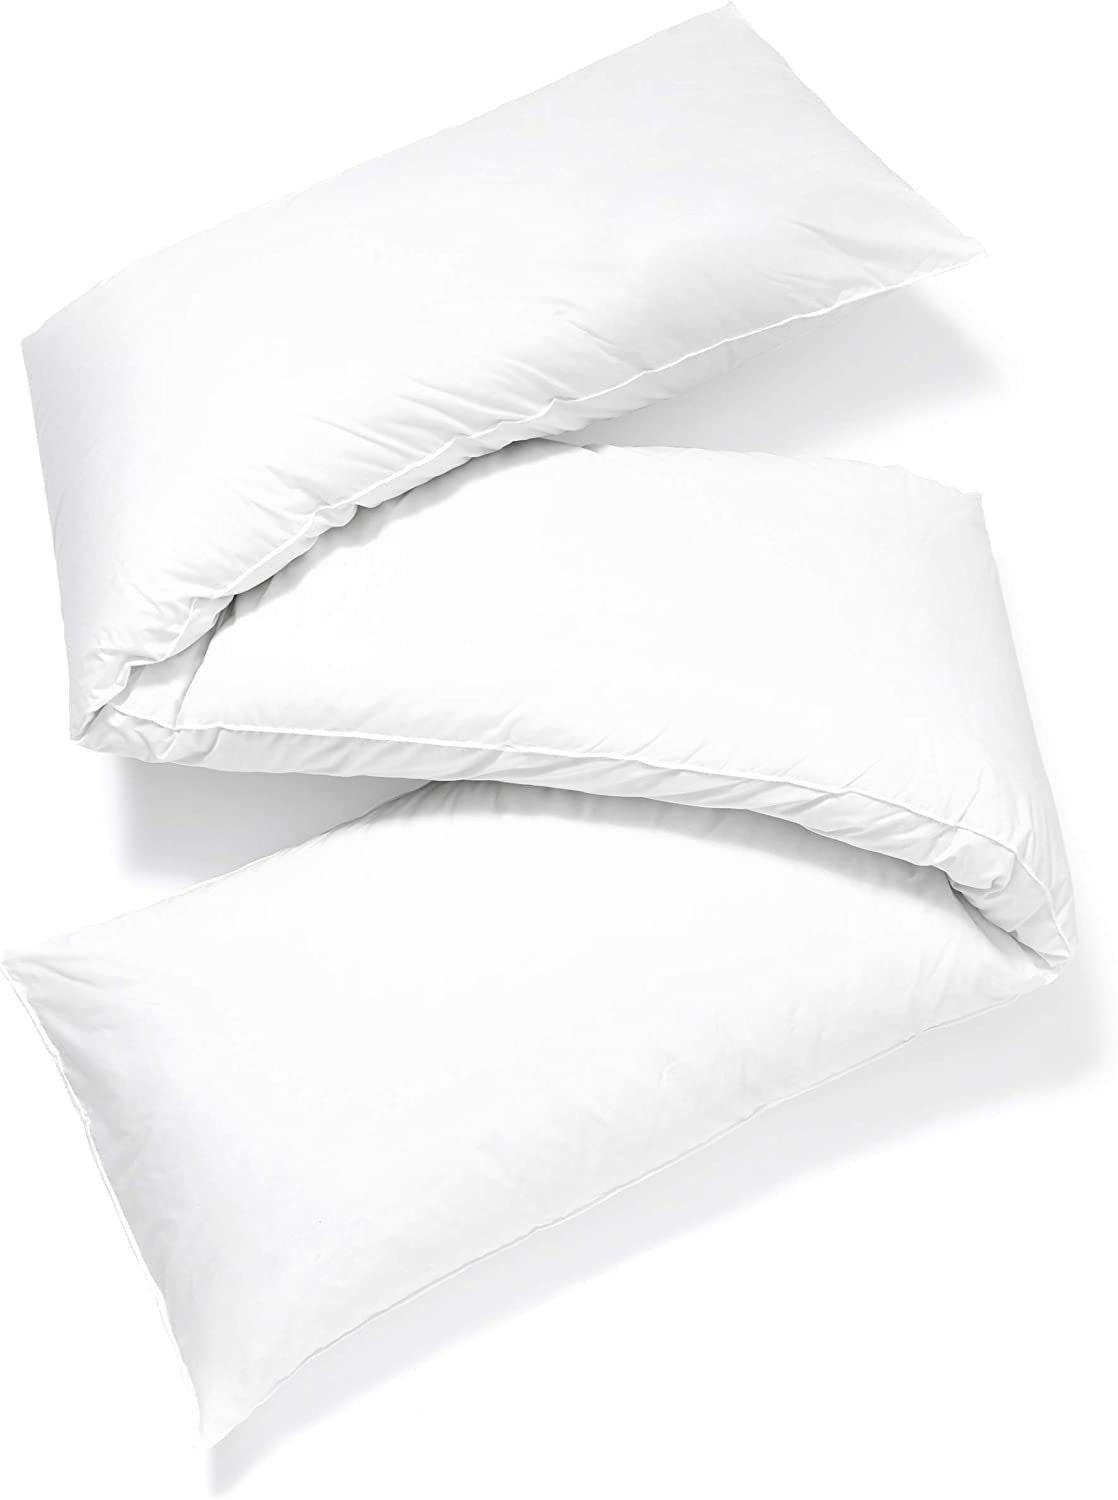 Borden Textile - Pillows, Throw Pillows, Textiles, Bed Pillows